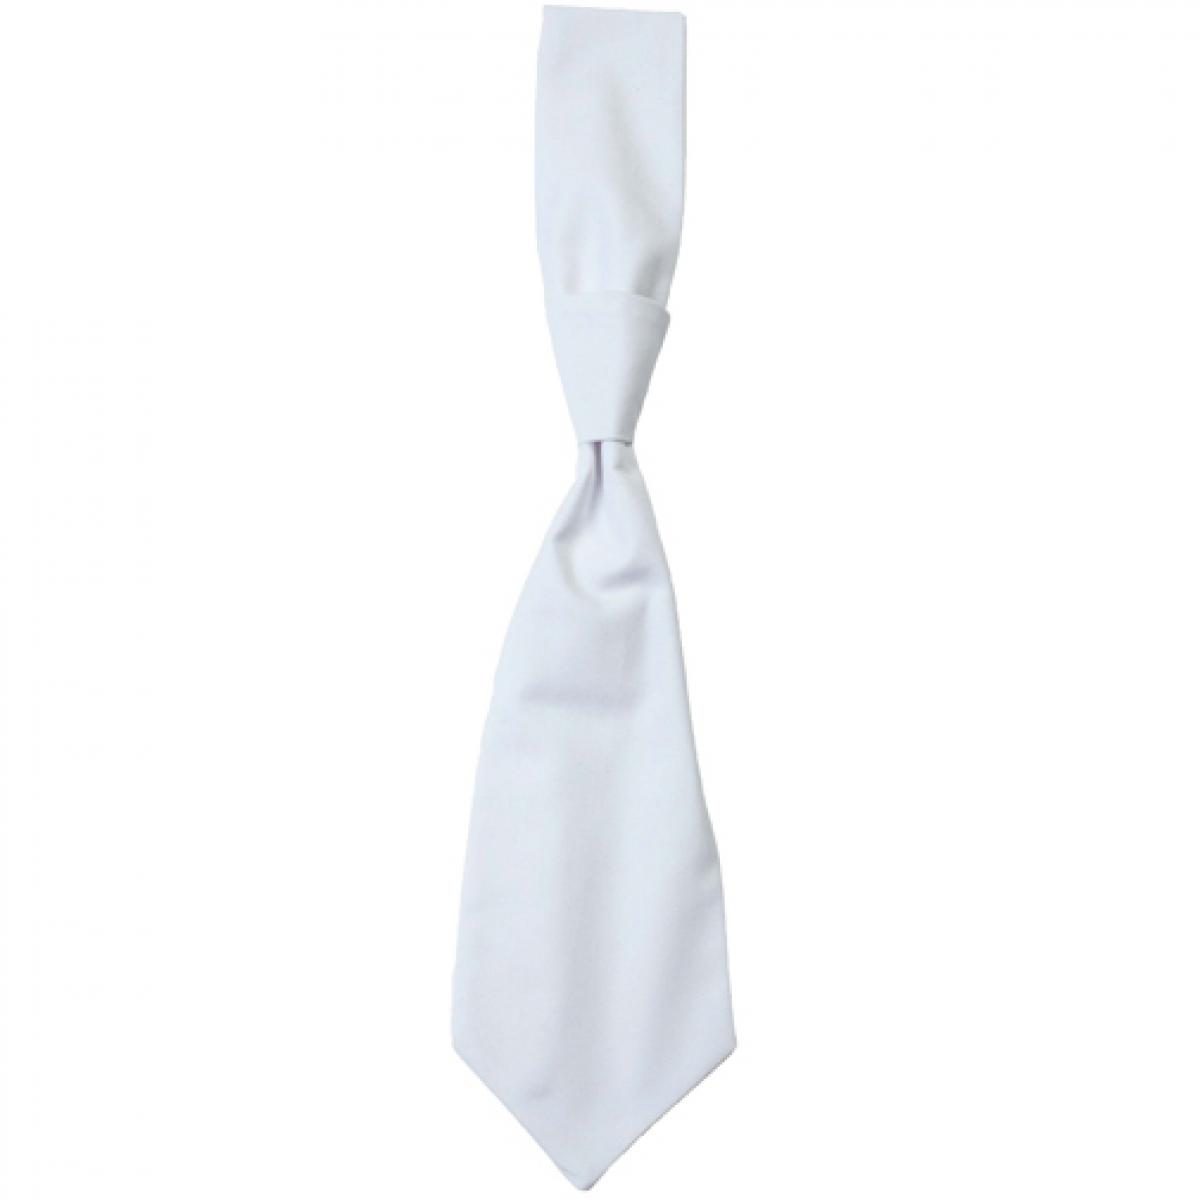 Hersteller: CG Workwear Herstellernummer: 01360-01 Artikelbezeichnung: Krawatte Messina / Zertifiziert nach Oeko-Tex 100 Farbe: White